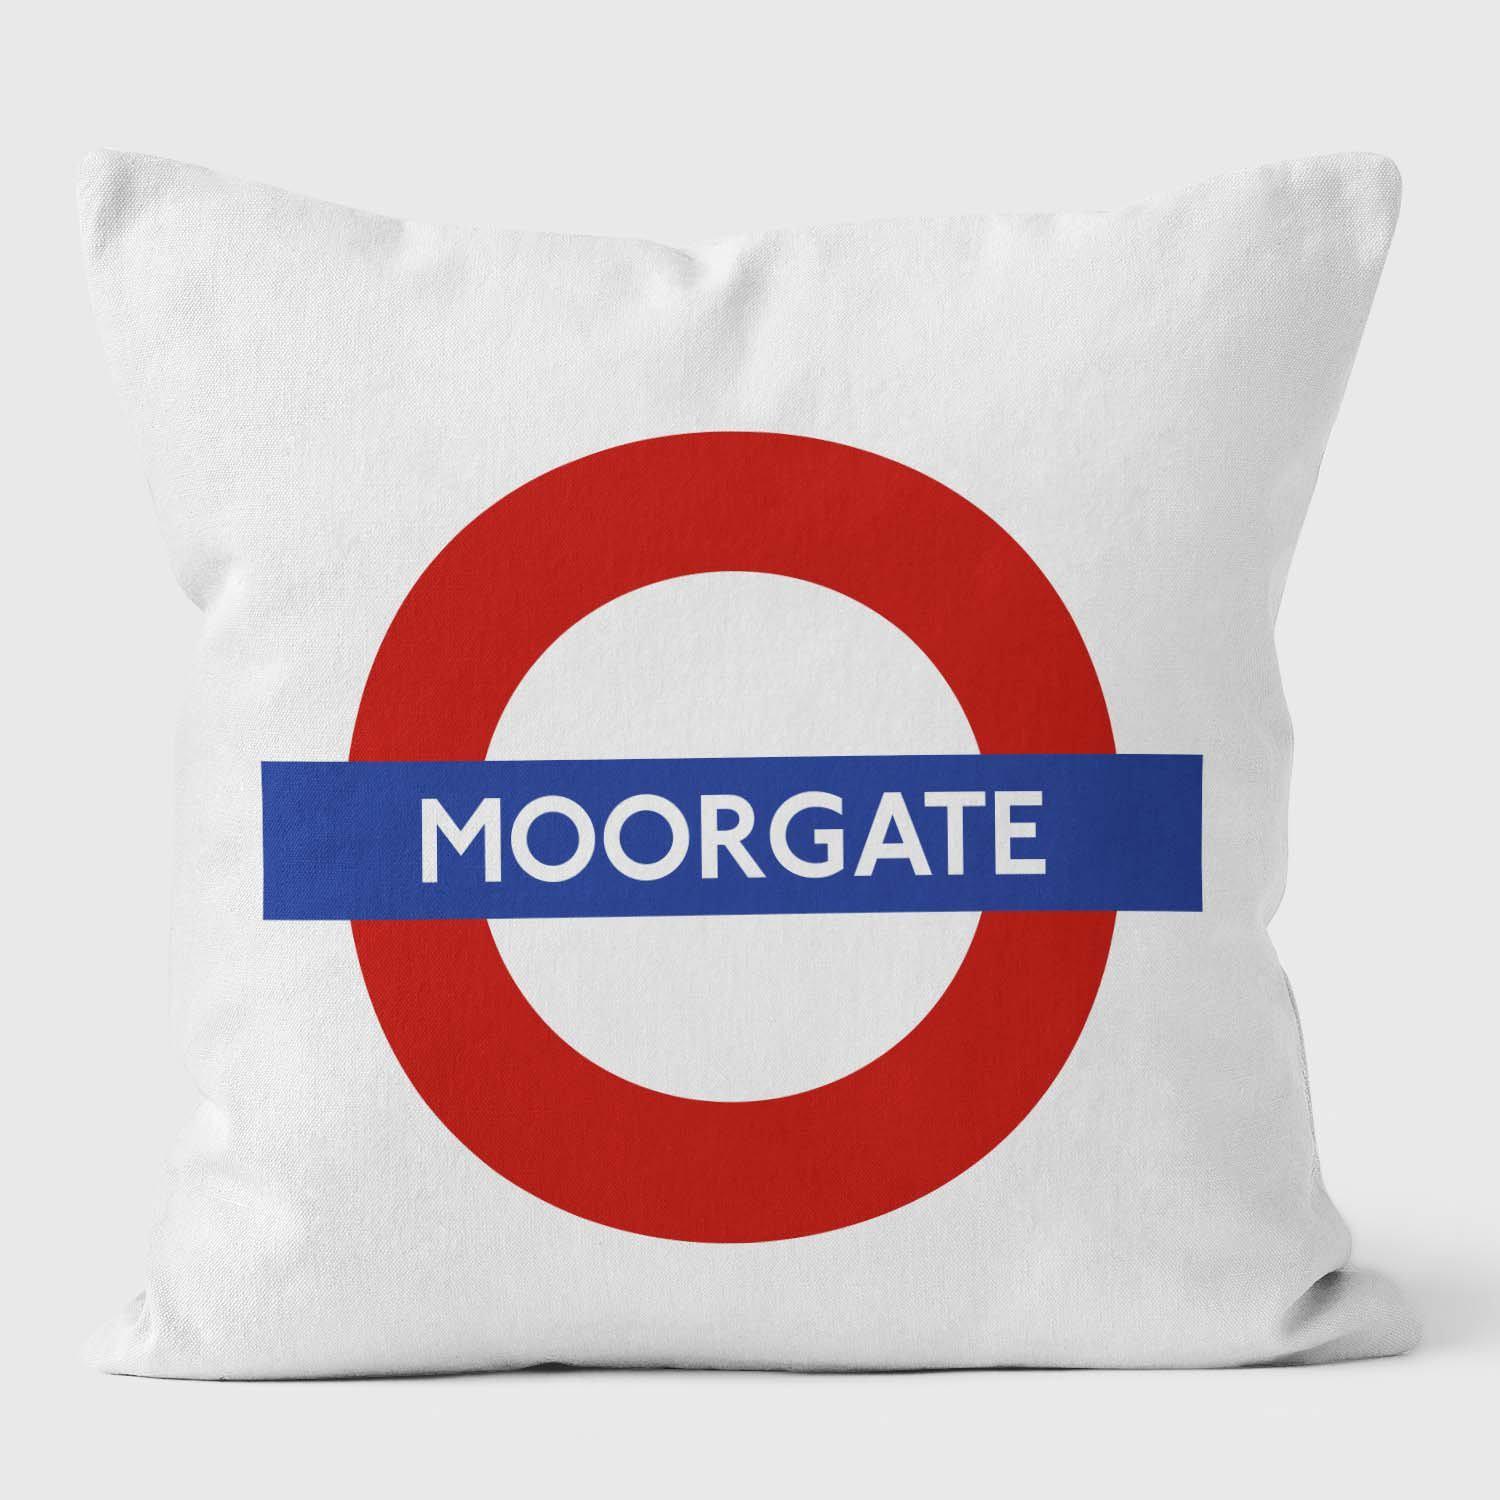 Moorgate London Underground Tube Station Roundel Cushion - Handmade Cushions UK - WeLoveCushions